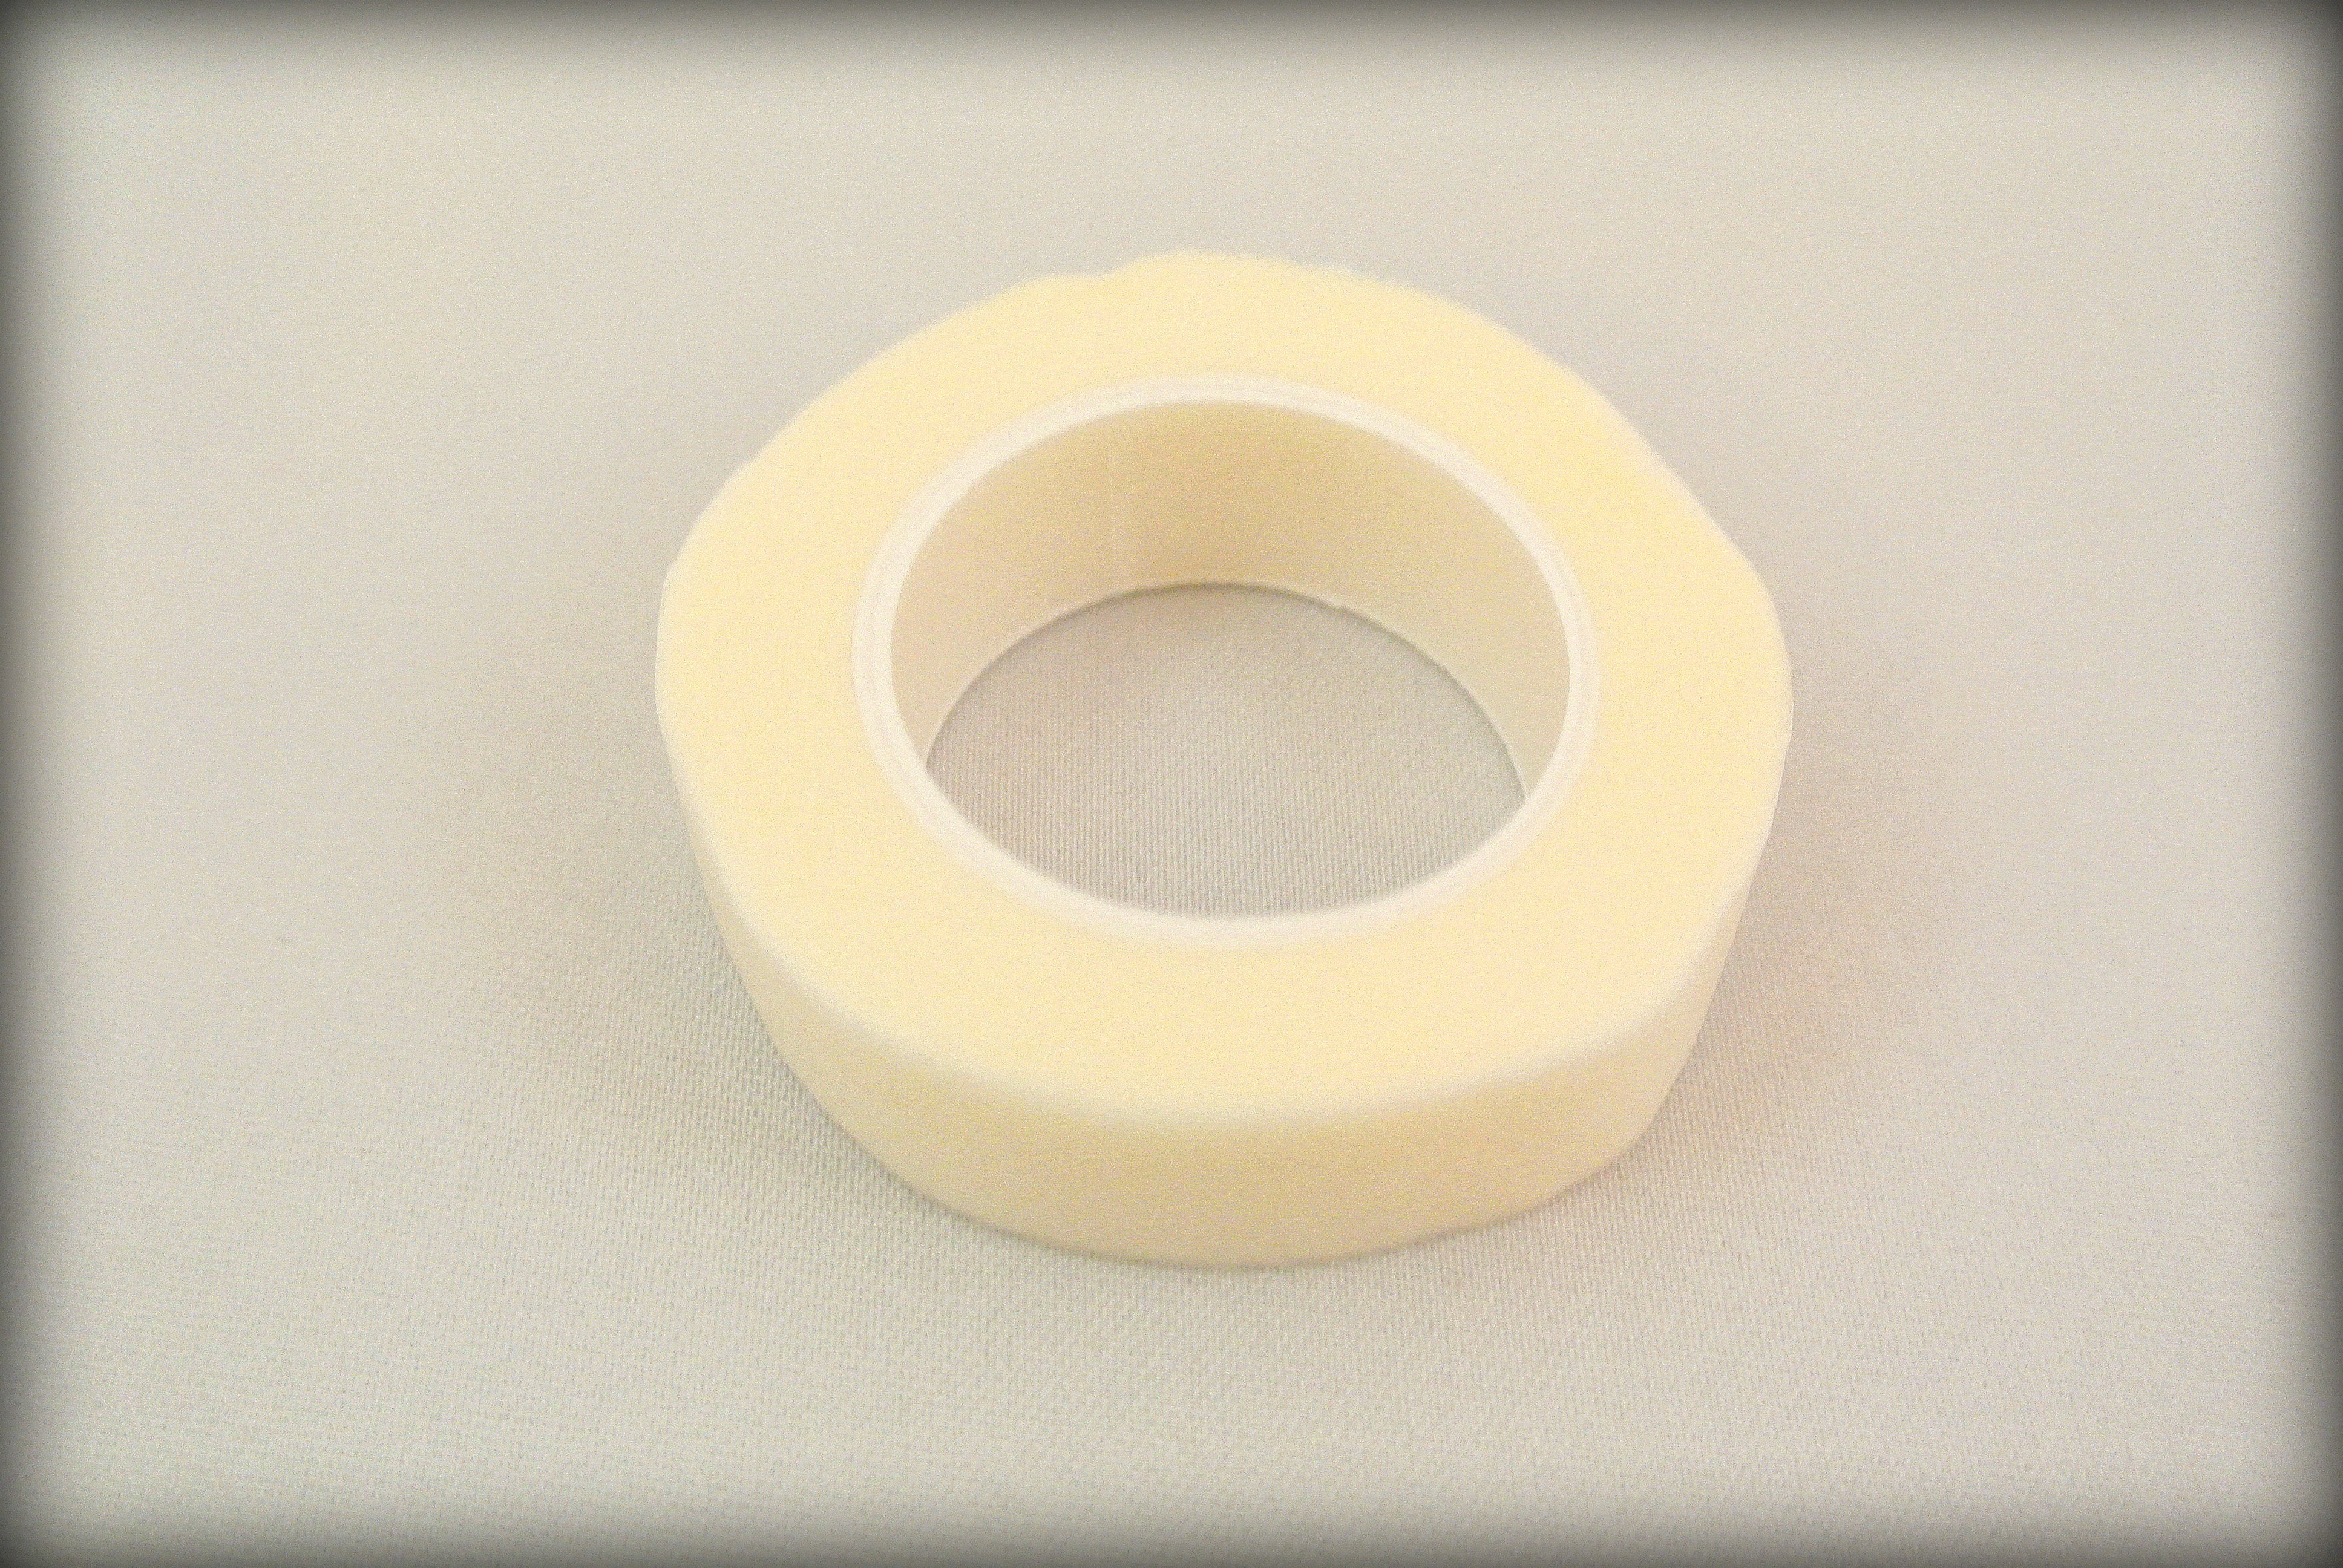 Paper S tape bij gebruik voor Wimperextensions deze tape is zacht voor de huid